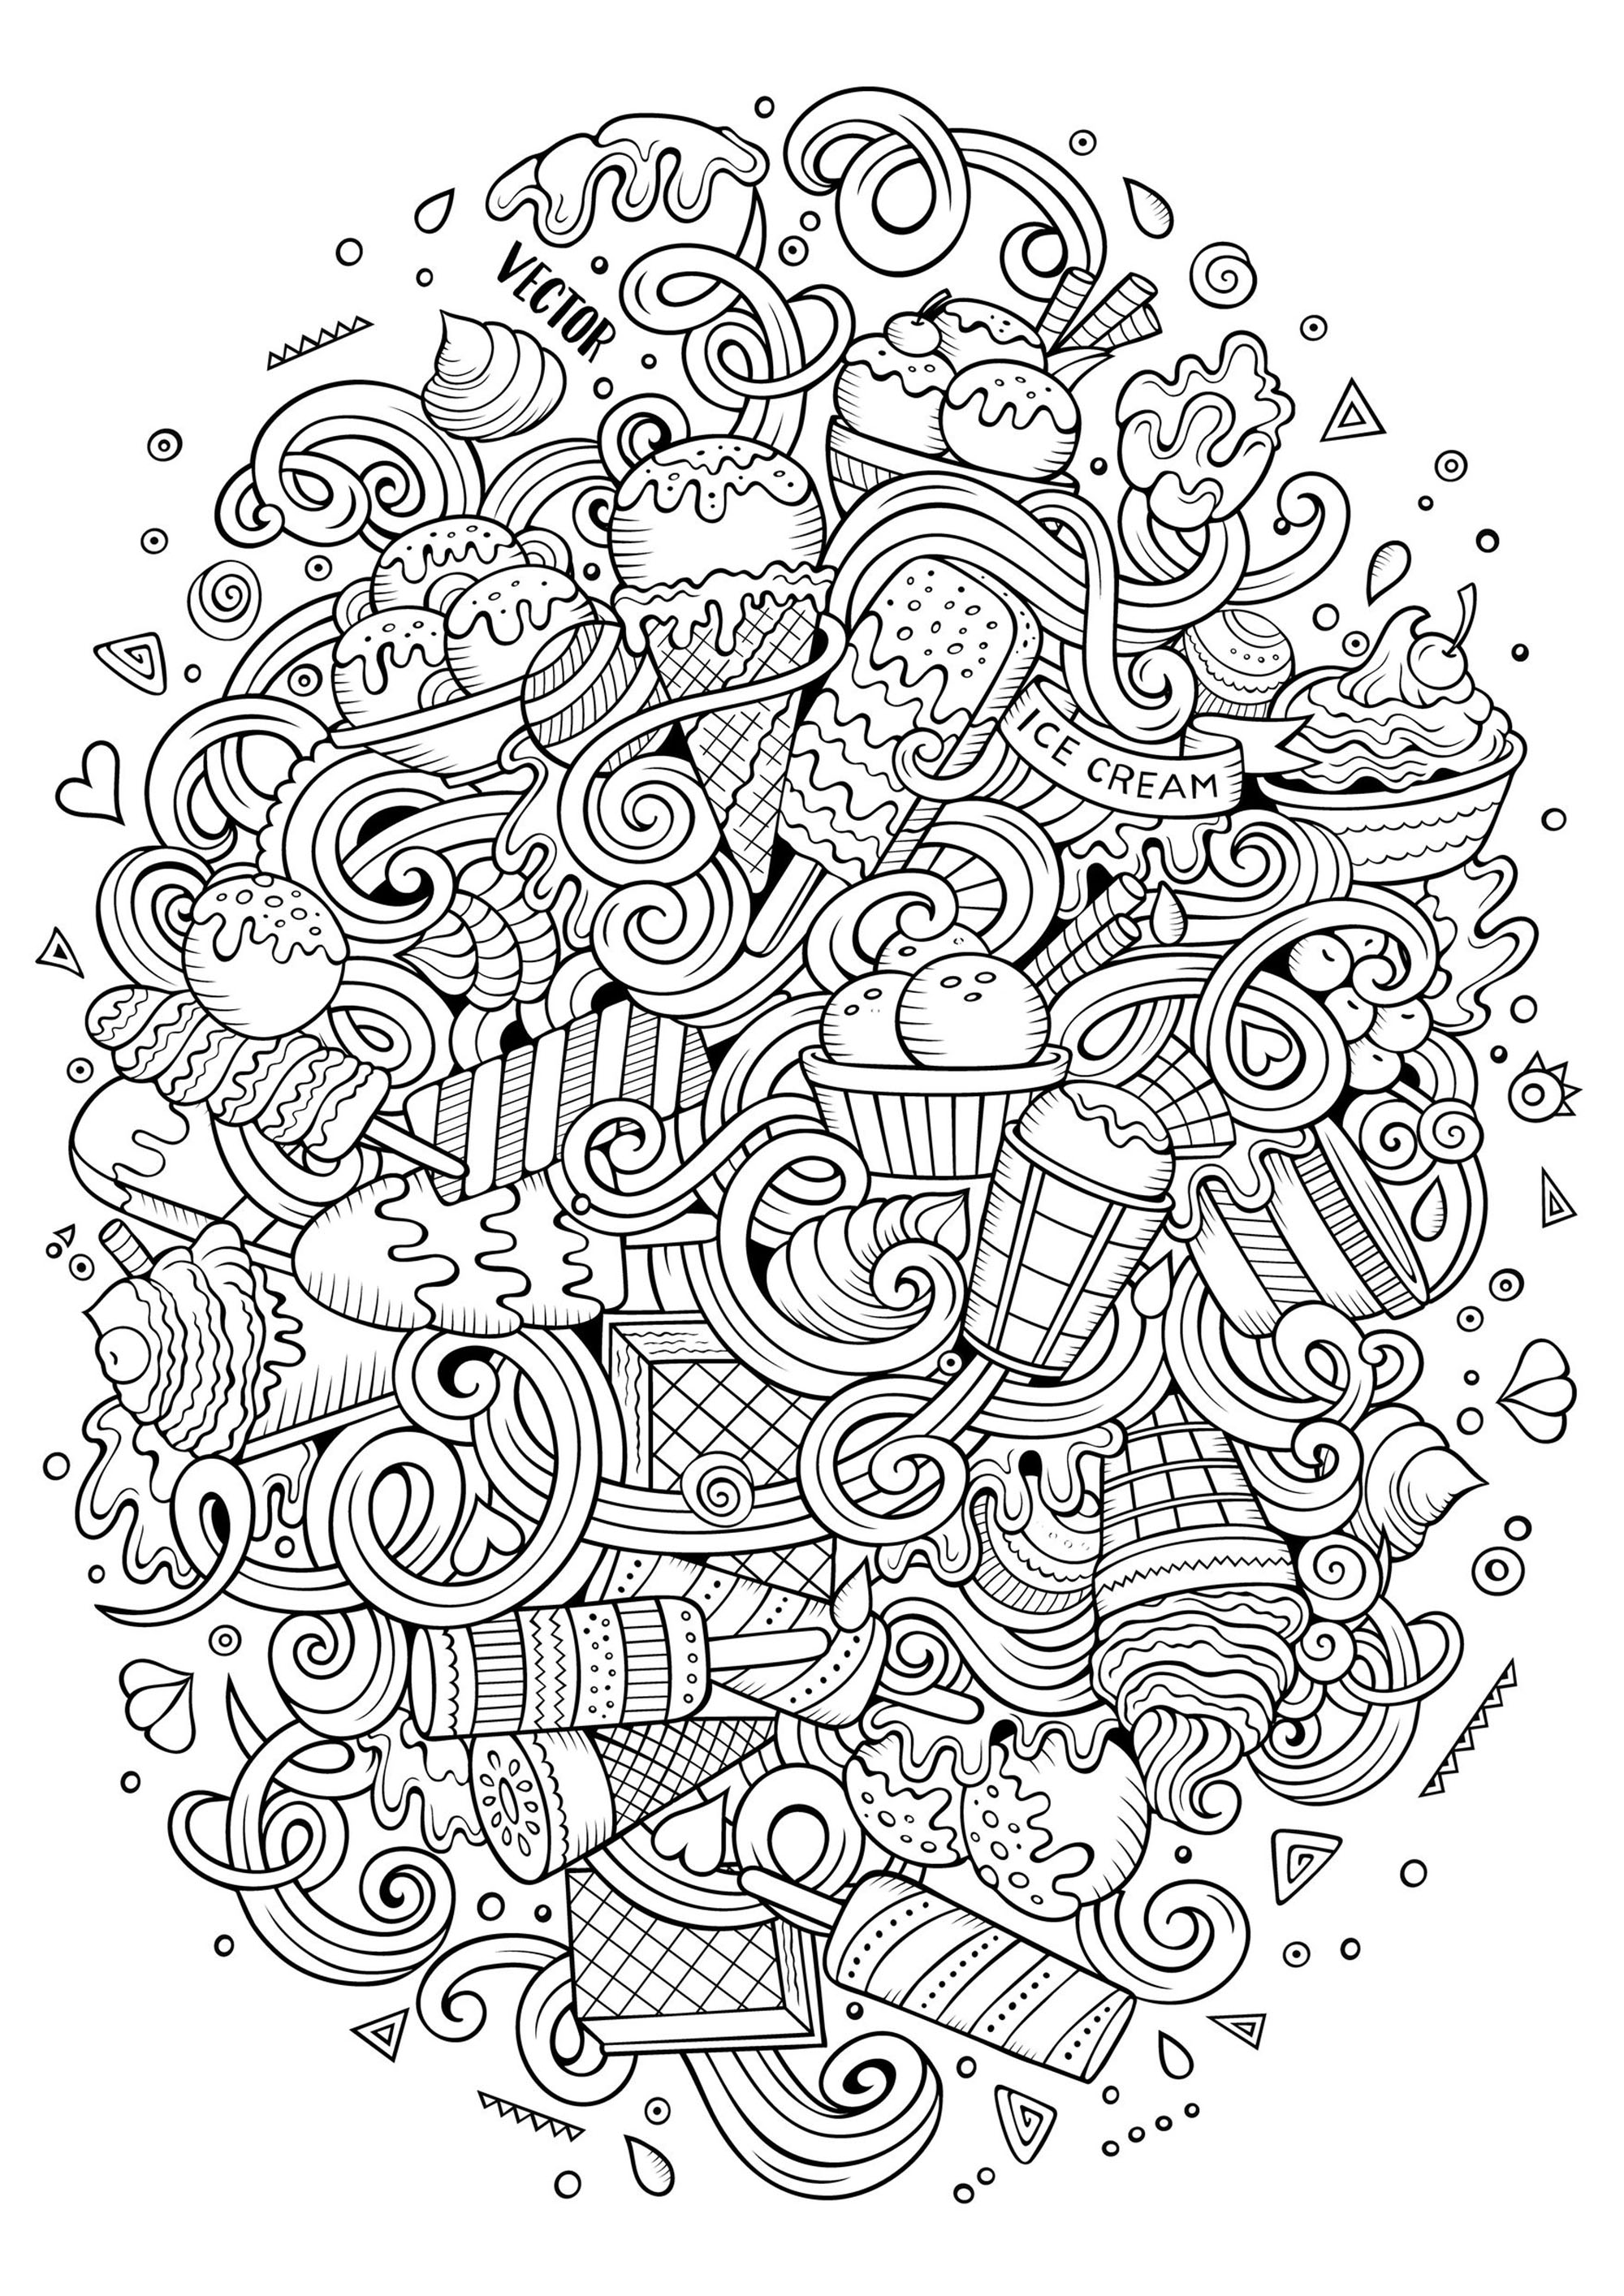 Ce mélange de glaces en style doodle vous promet un coloriage rafraîchissant pour l'été !, Source : 123rf   Artiste : Olga Kostenko